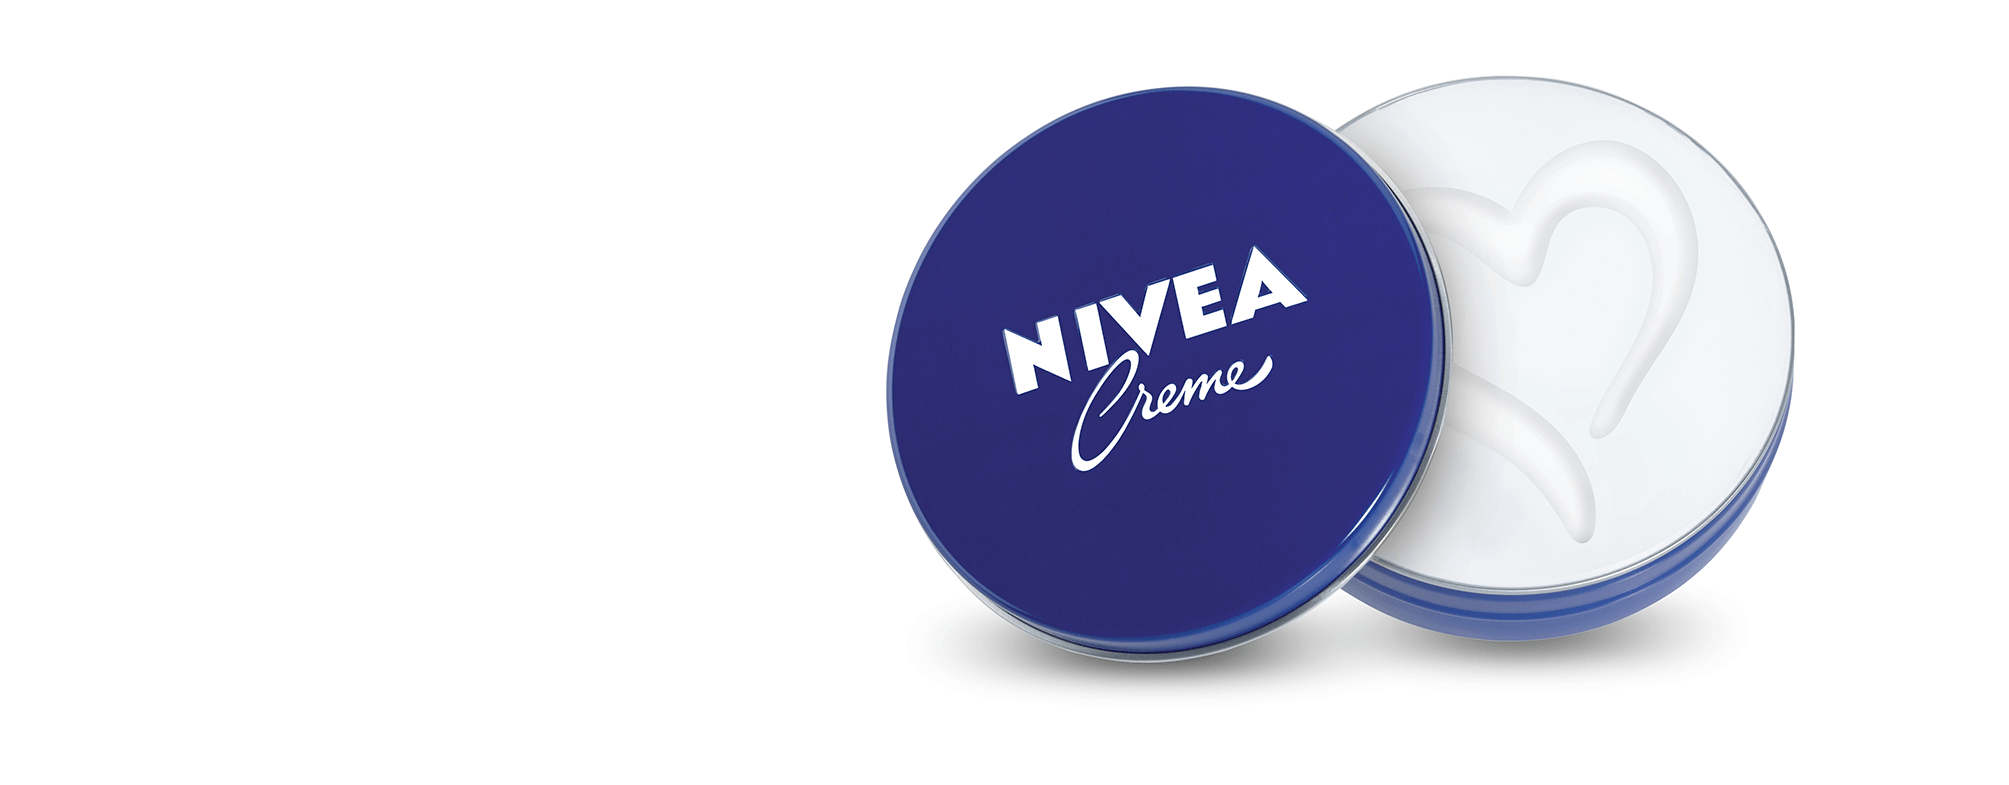 Nivea Logo - One Creme: Many Ways To Care